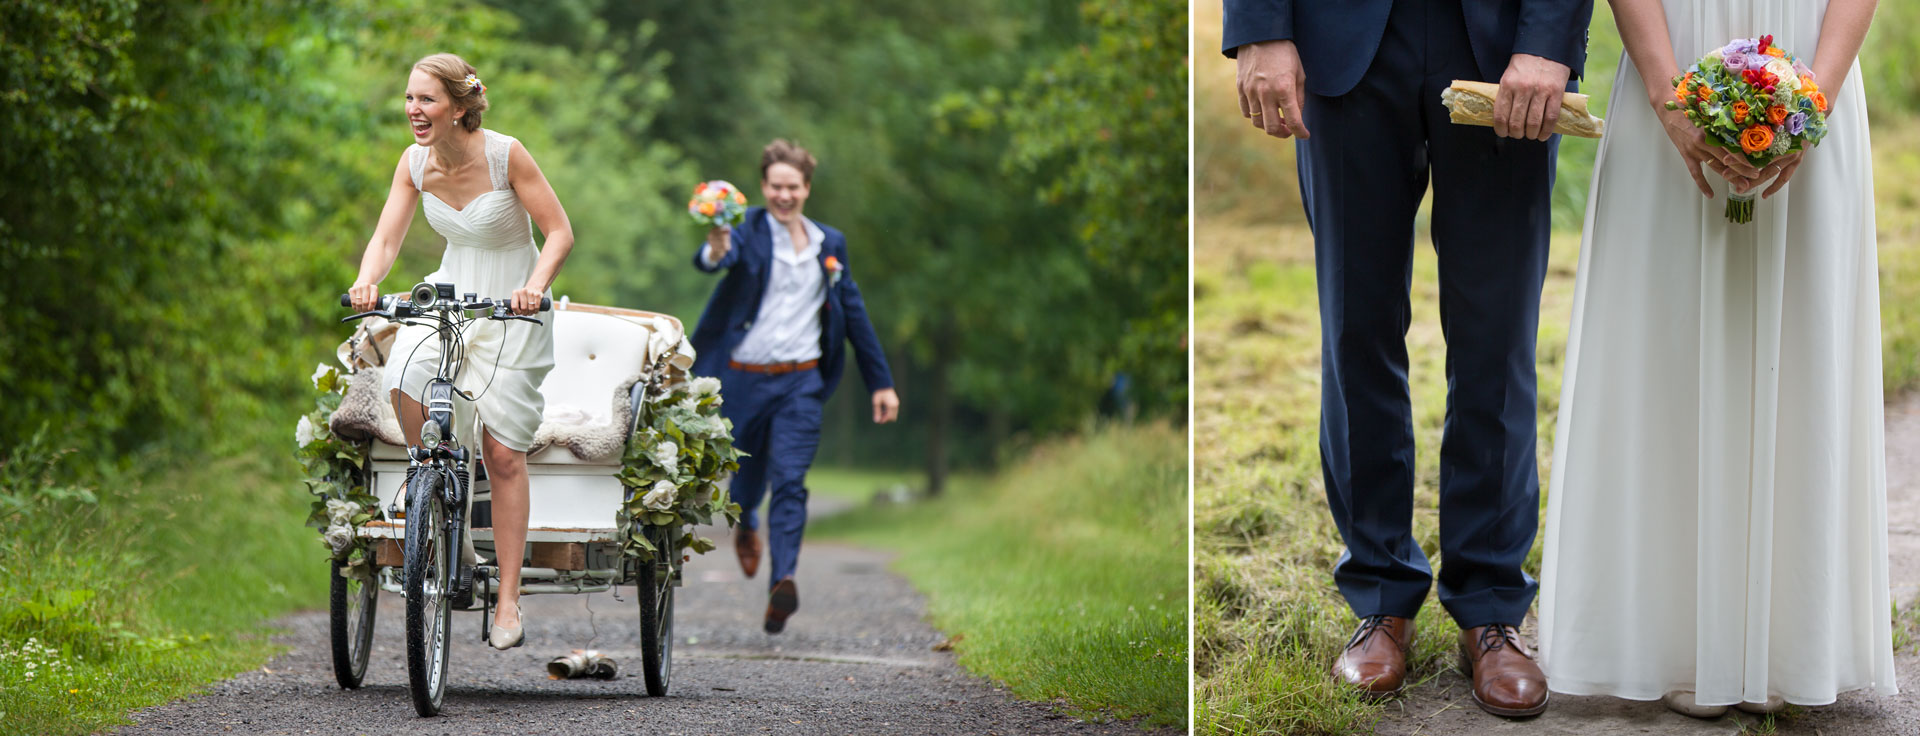 Bräutigam rennt hinter der Braut auf der Hochzeitsrikscha